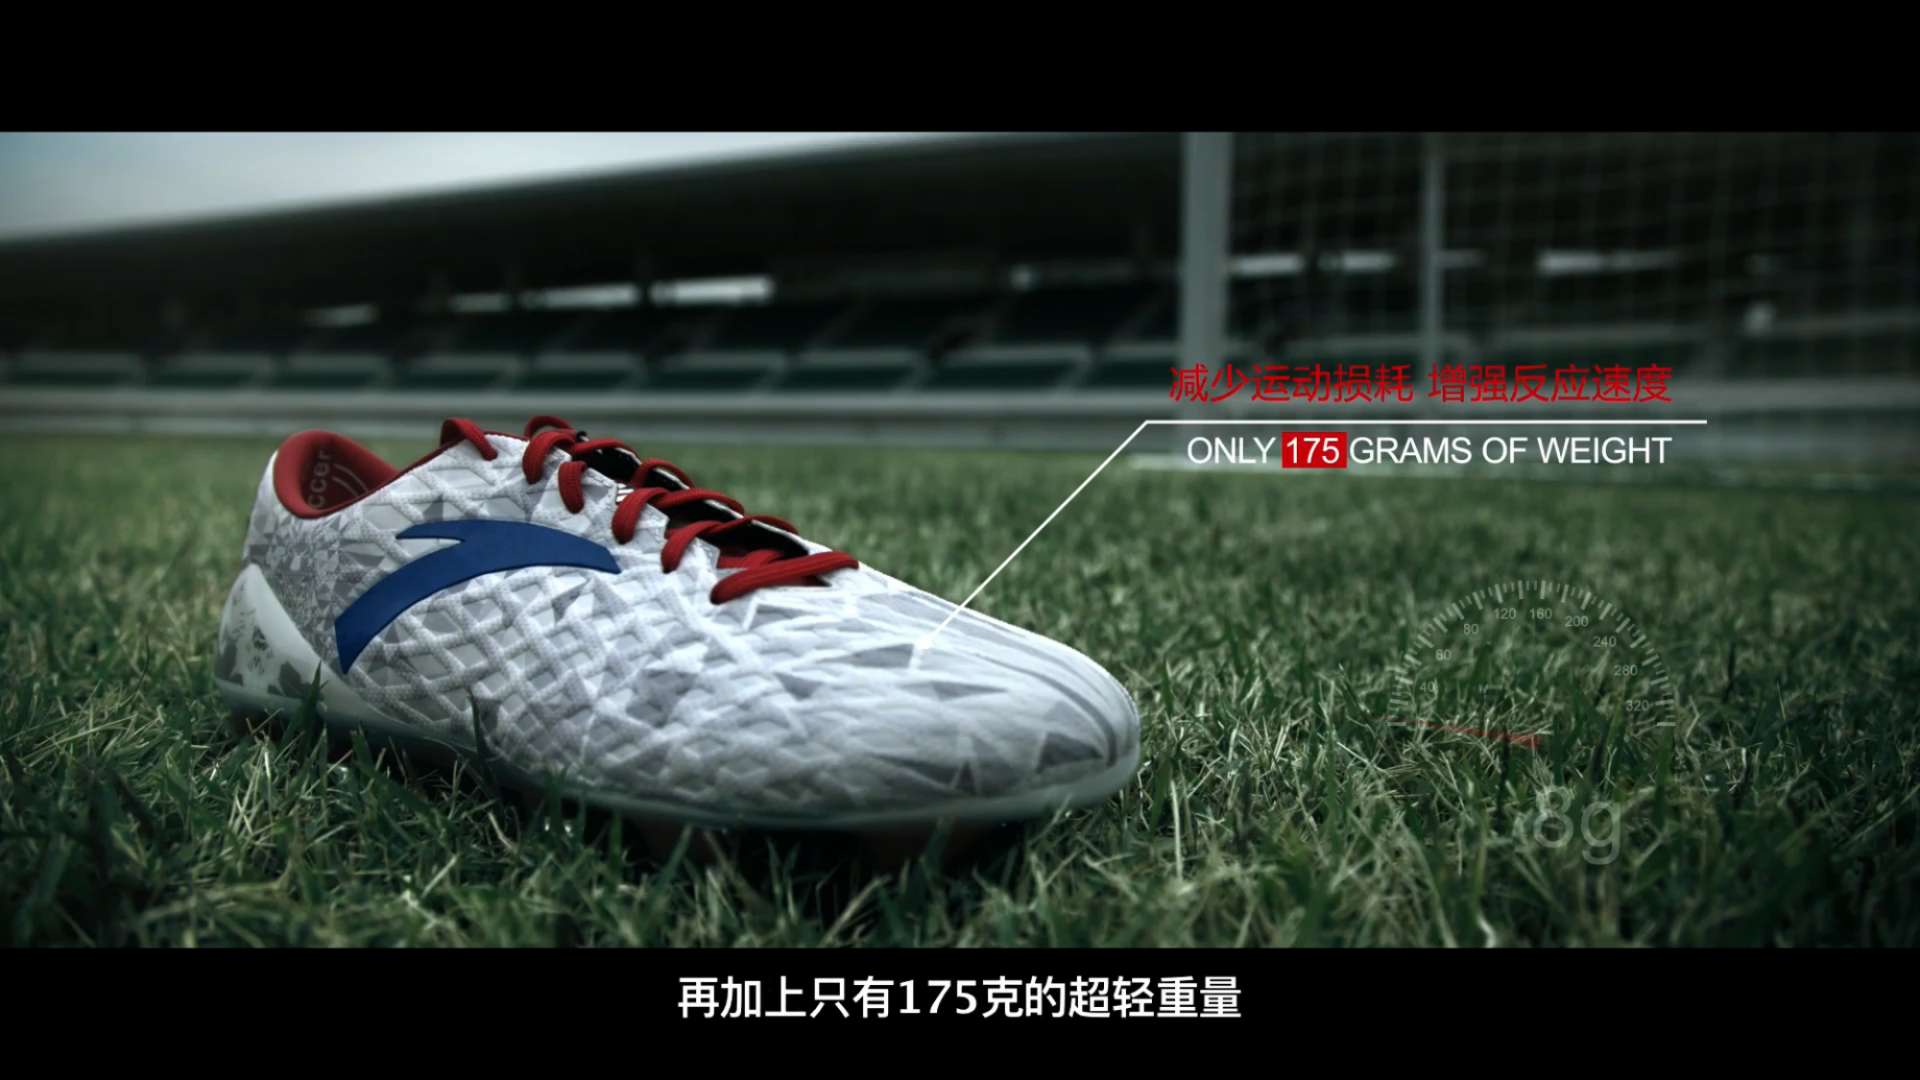 《只管去踢》安踏足球鞋设计师纪录短片